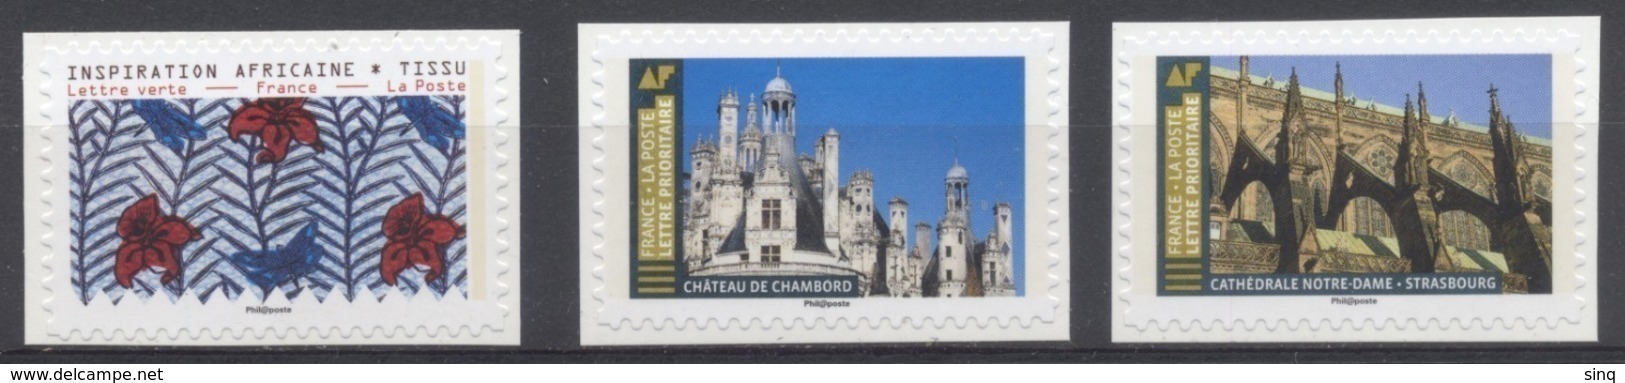 N° 1660 N° 1674 - N° 1675 - 3 Adhésifs 2019 - Inspiration Africaine Tissus - Chambord Et Notre Dame Strasbourg - Autres & Non Classés